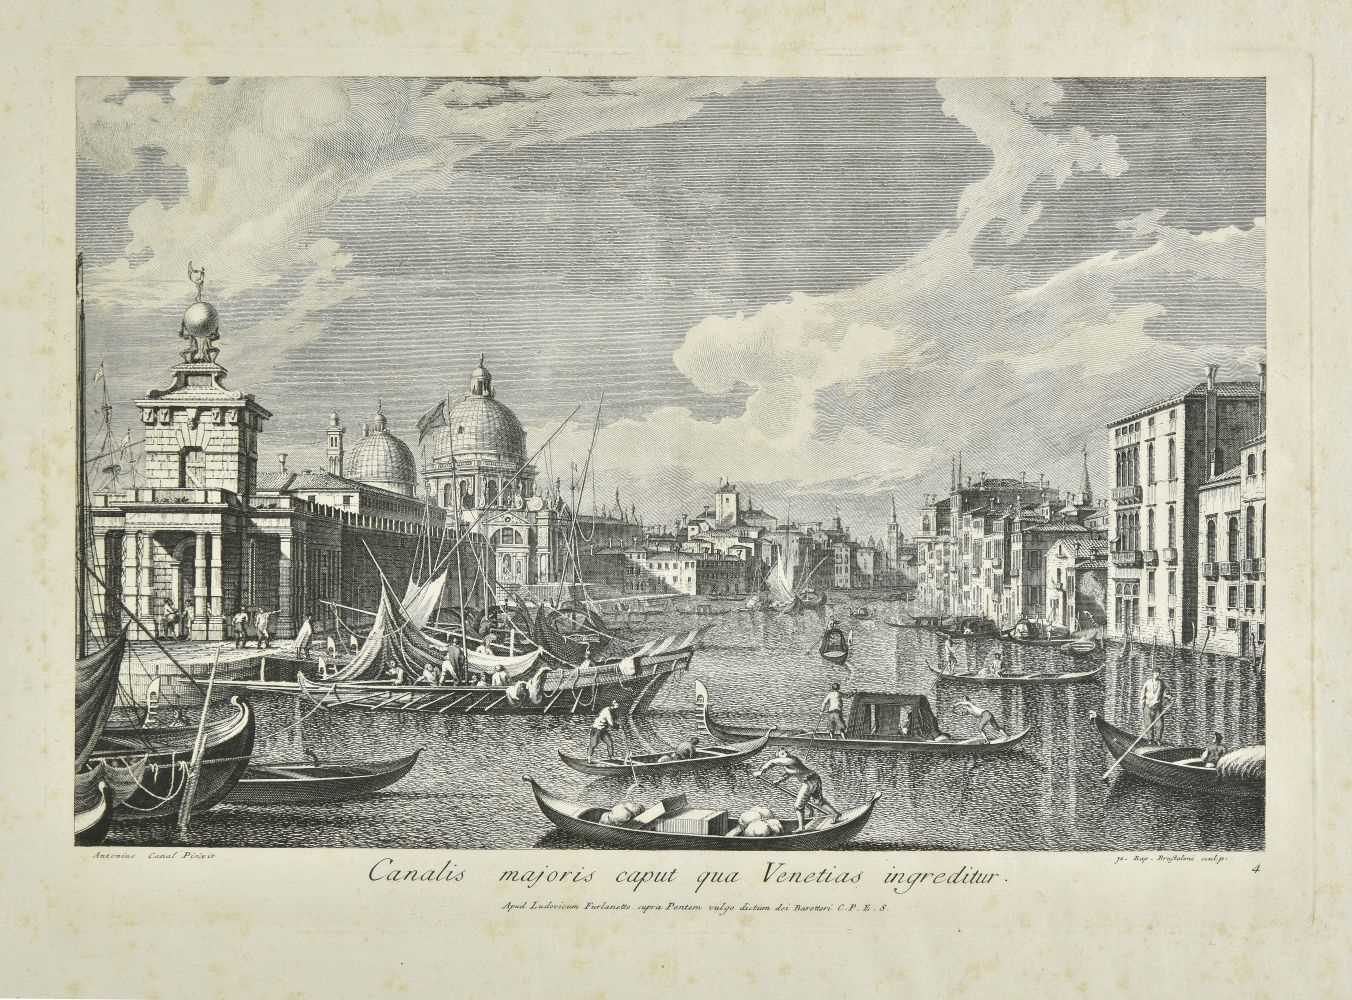 Lot 230 - Brustolon (Giovanni Battista, 1712-1796). Canalis majoris caput qua Venetias ingreditur, [1766]